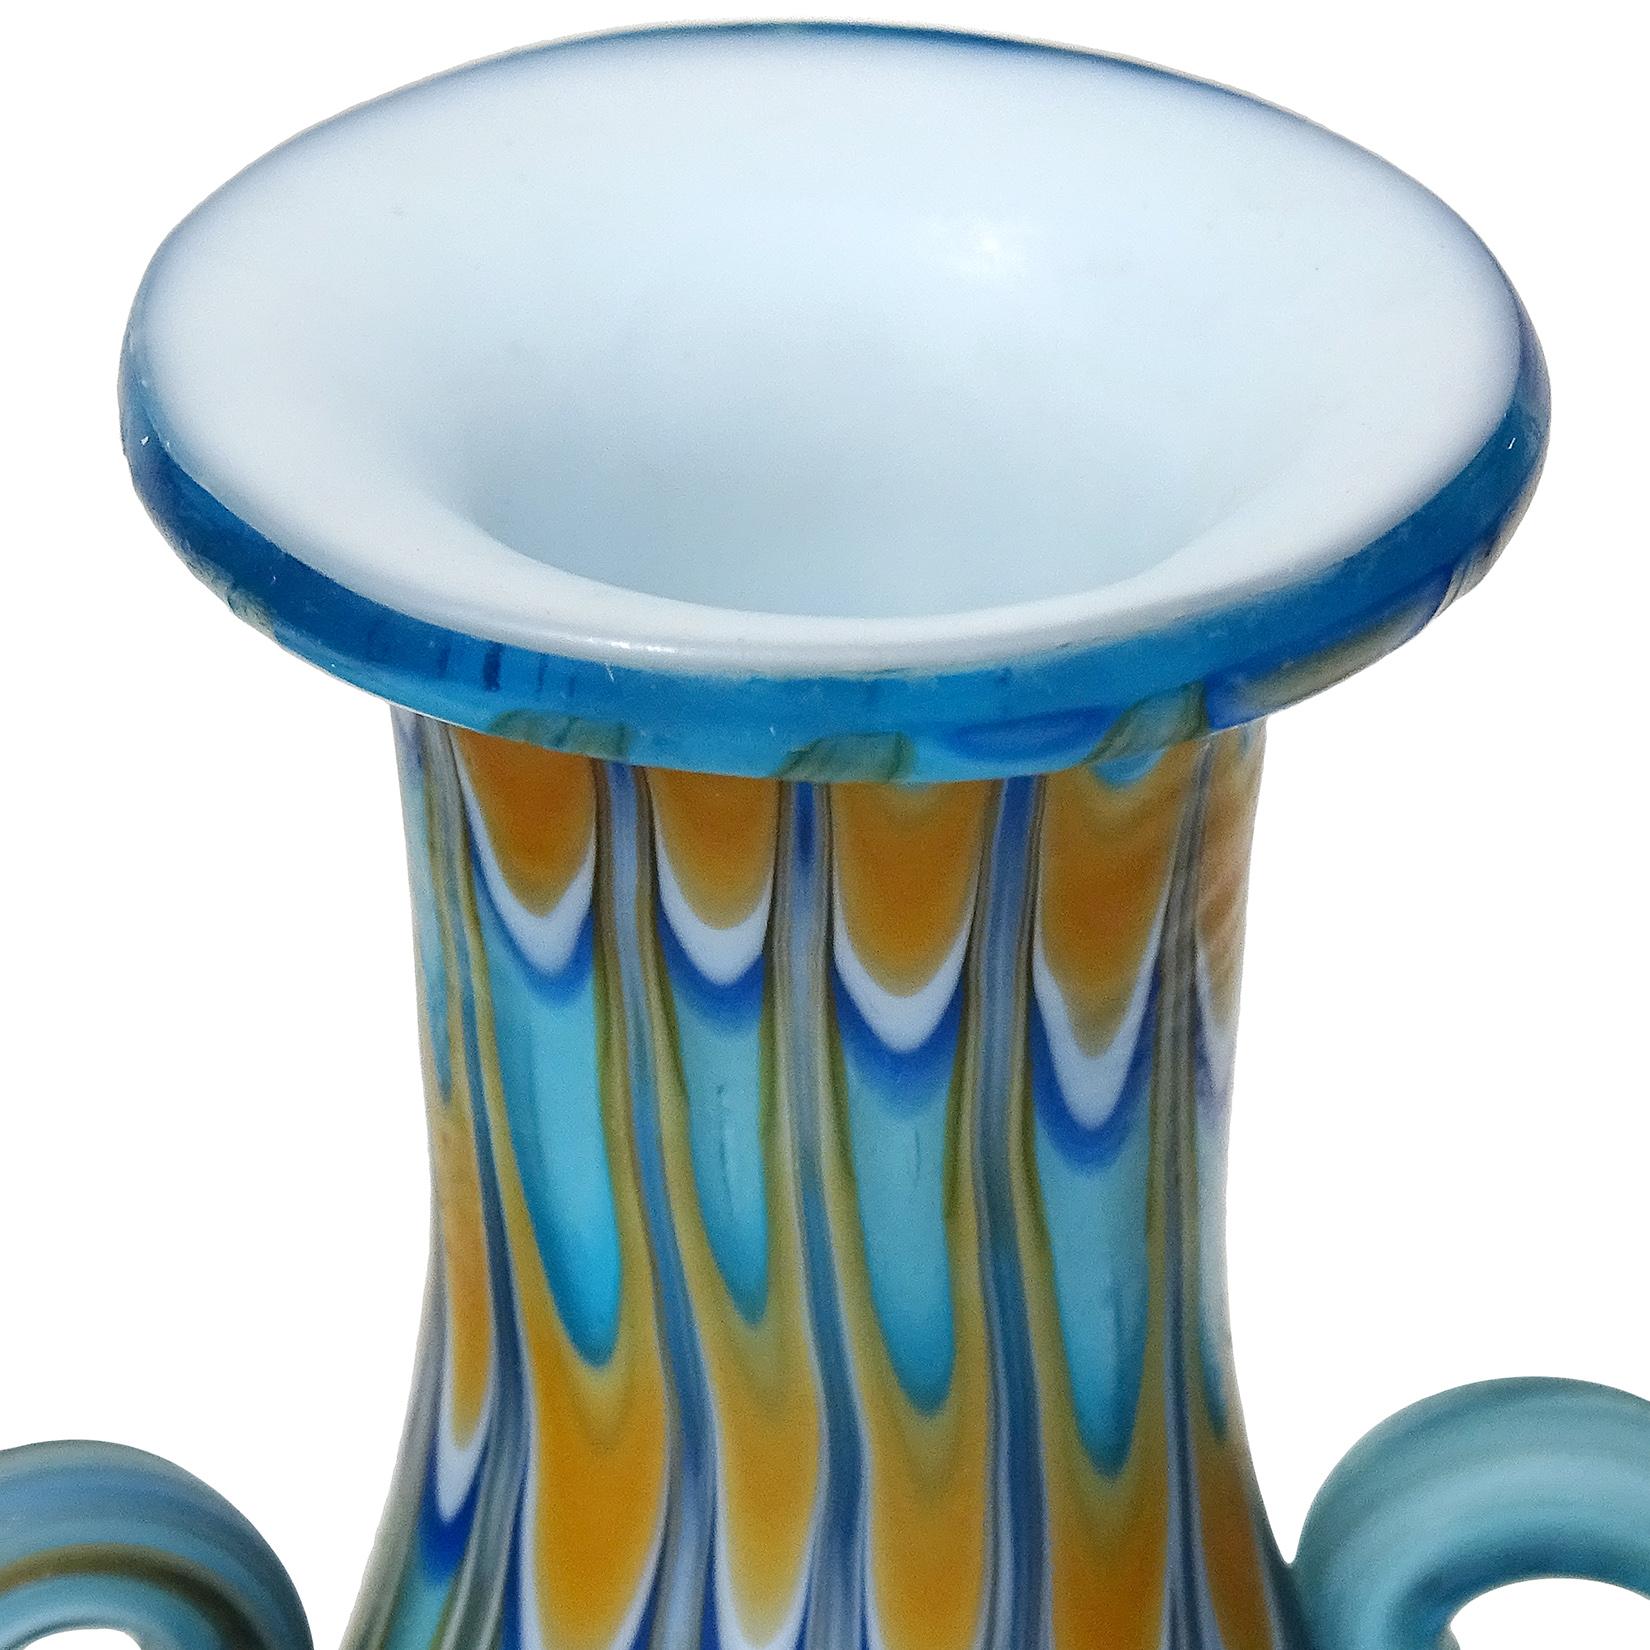 Schöne antike Murano mundgeblasen Kobalt und Himmel blau, orange und weiß italienische Kunst Glas dekorative Doppelgriff Schrank Vase. Dokumentiert für die Firma Fratelli Toso, ca. 1900-1920. Die Vase hat ein frühes Design und eine ungewöhnliche